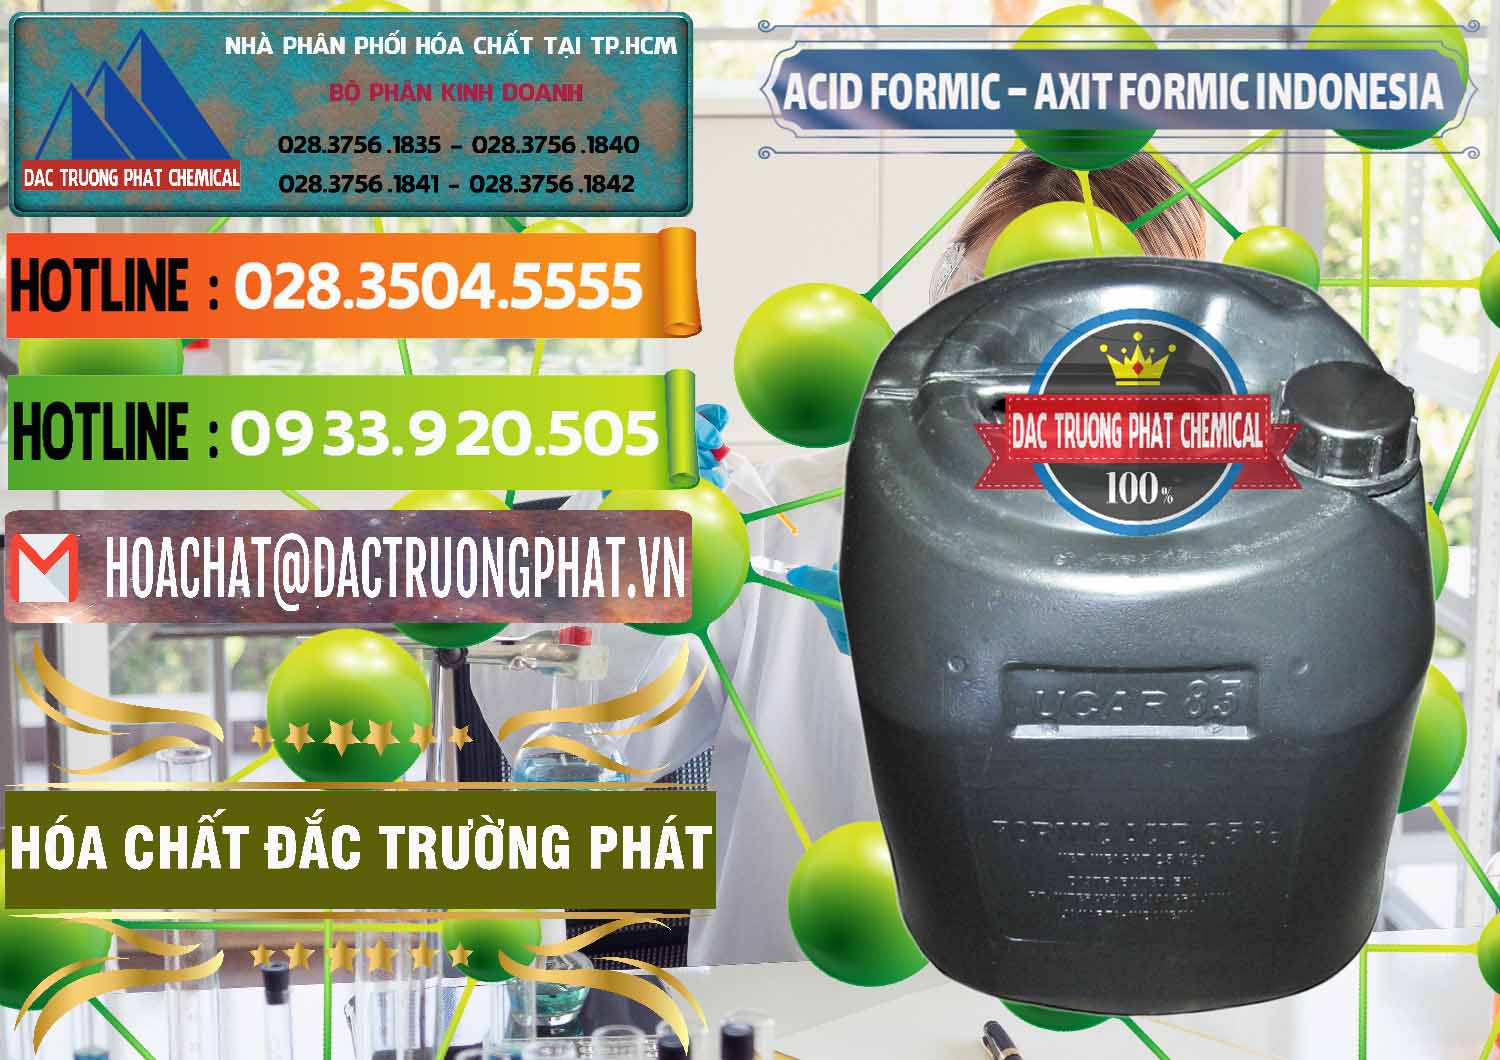 Cty chuyên bán và cung cấp Acid Formic - Axit Formic Indonesia - 0026 - Chuyên bán và cung cấp hóa chất tại TP.HCM - cungcaphoachat.com.vn